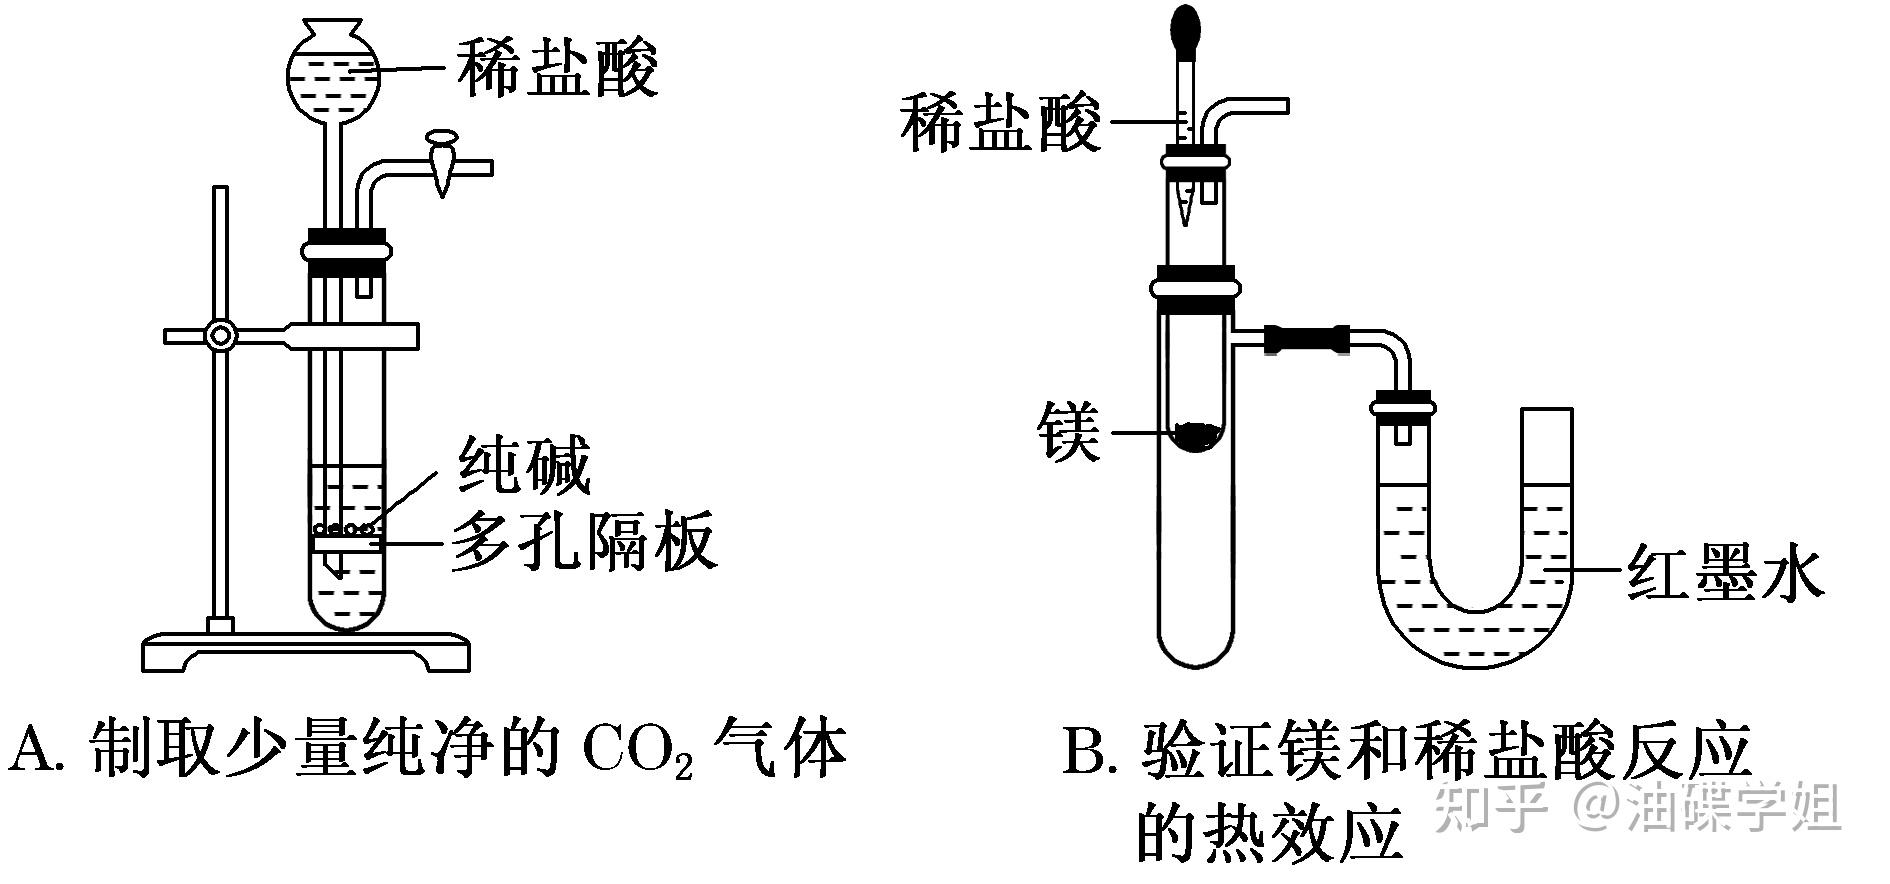 的液面差验证镁和稀盐酸反应的热效应,b项正确;氨气的密度比空气小